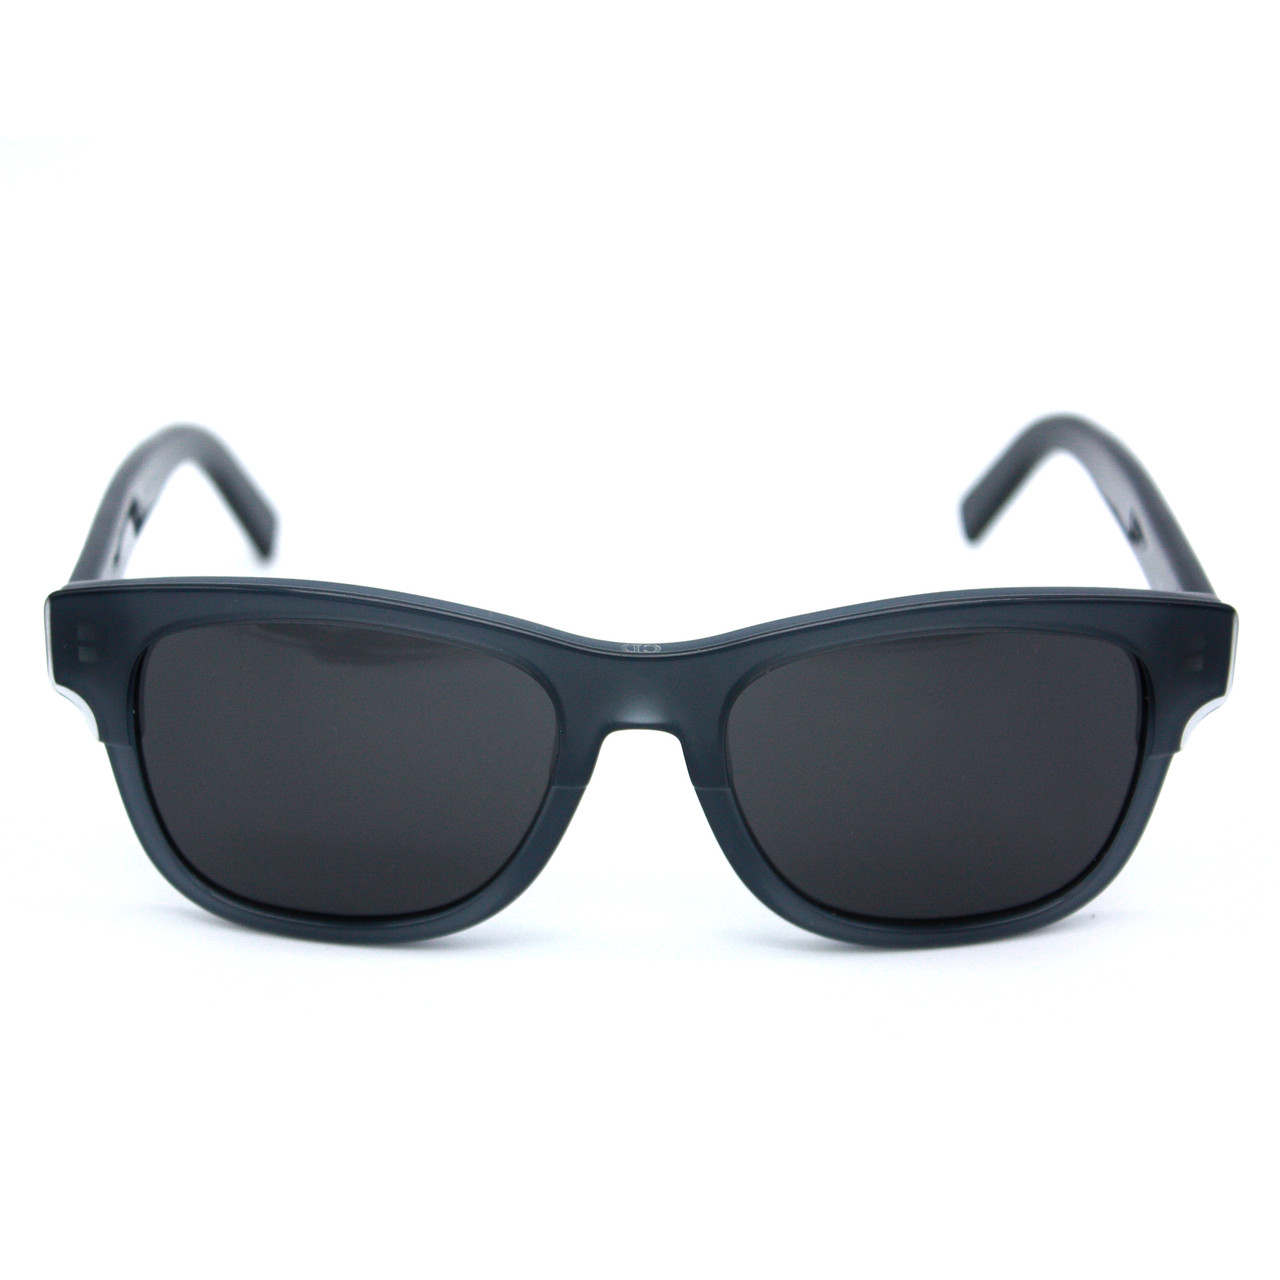 c dior sunglasses